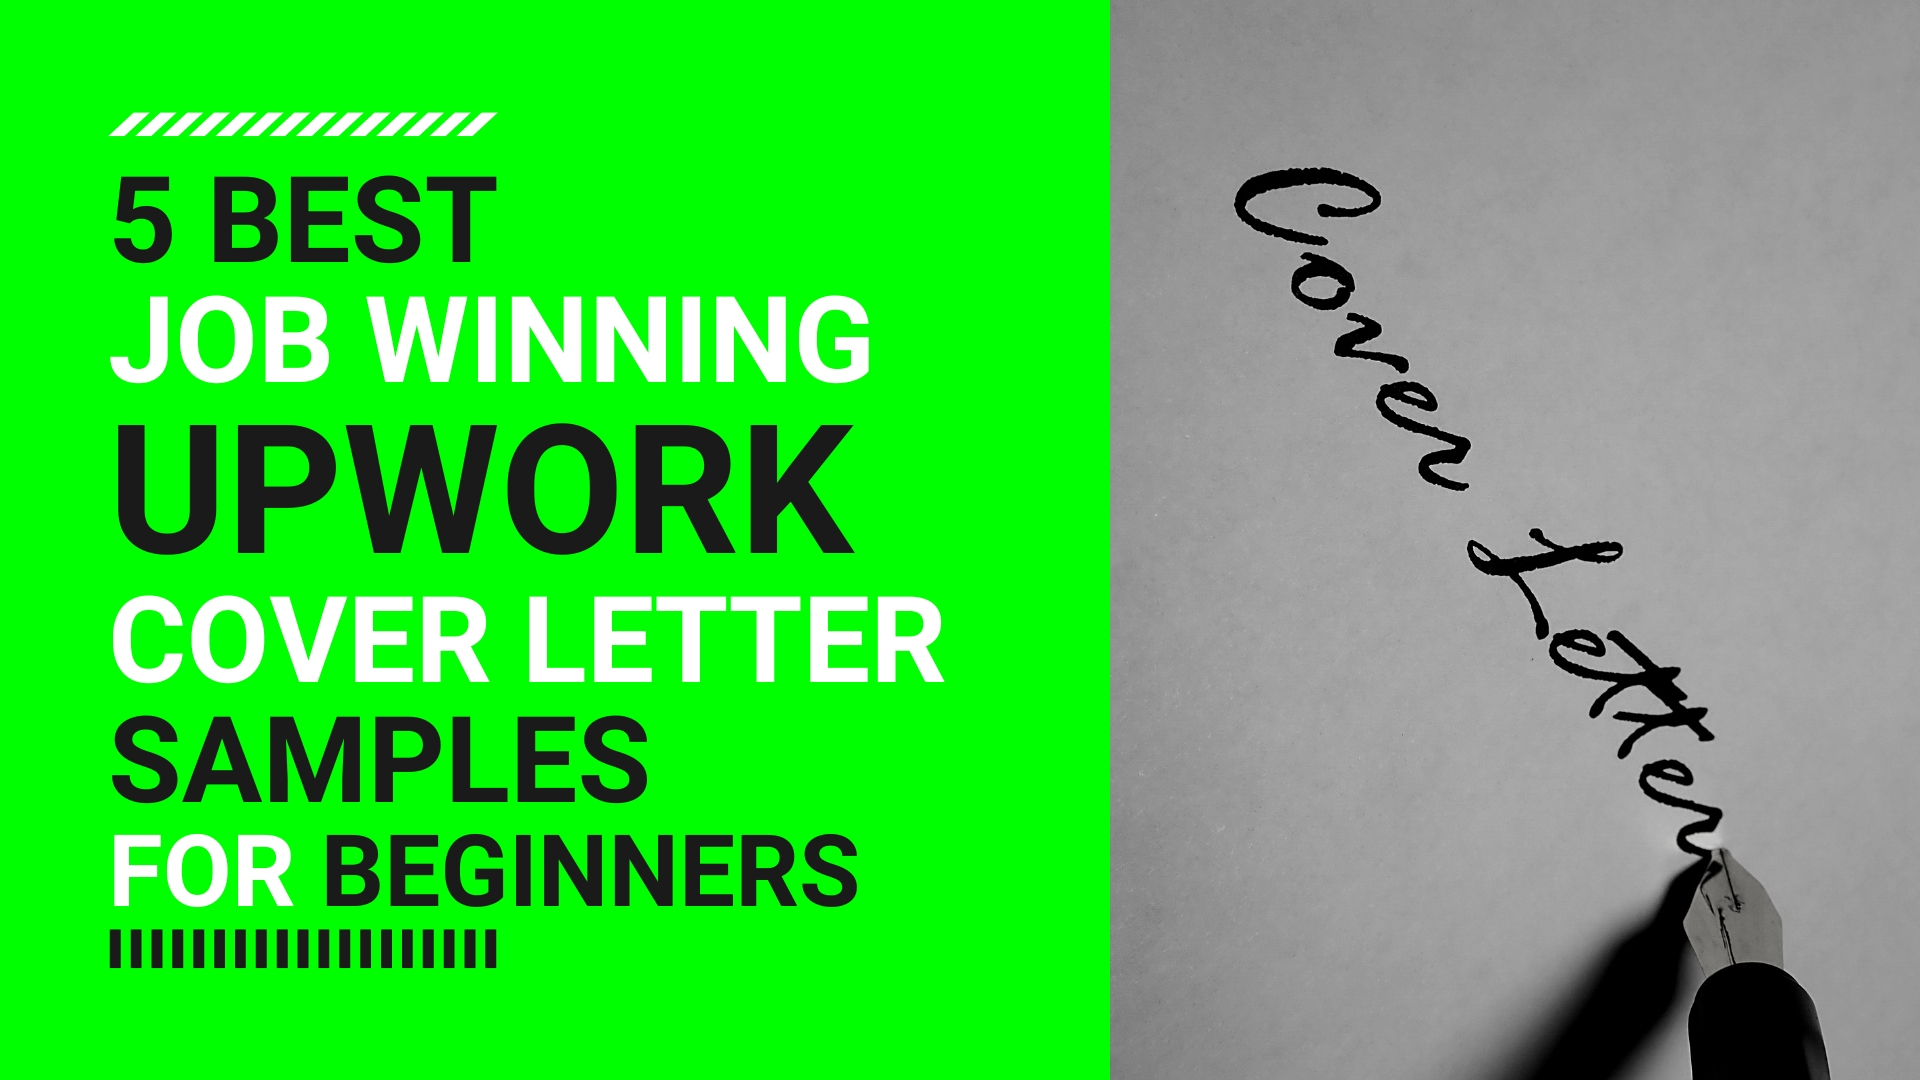 5 Best Job Winning Upwork Cover Letter Samples for BEGINNERS - Agha Sahad Khan